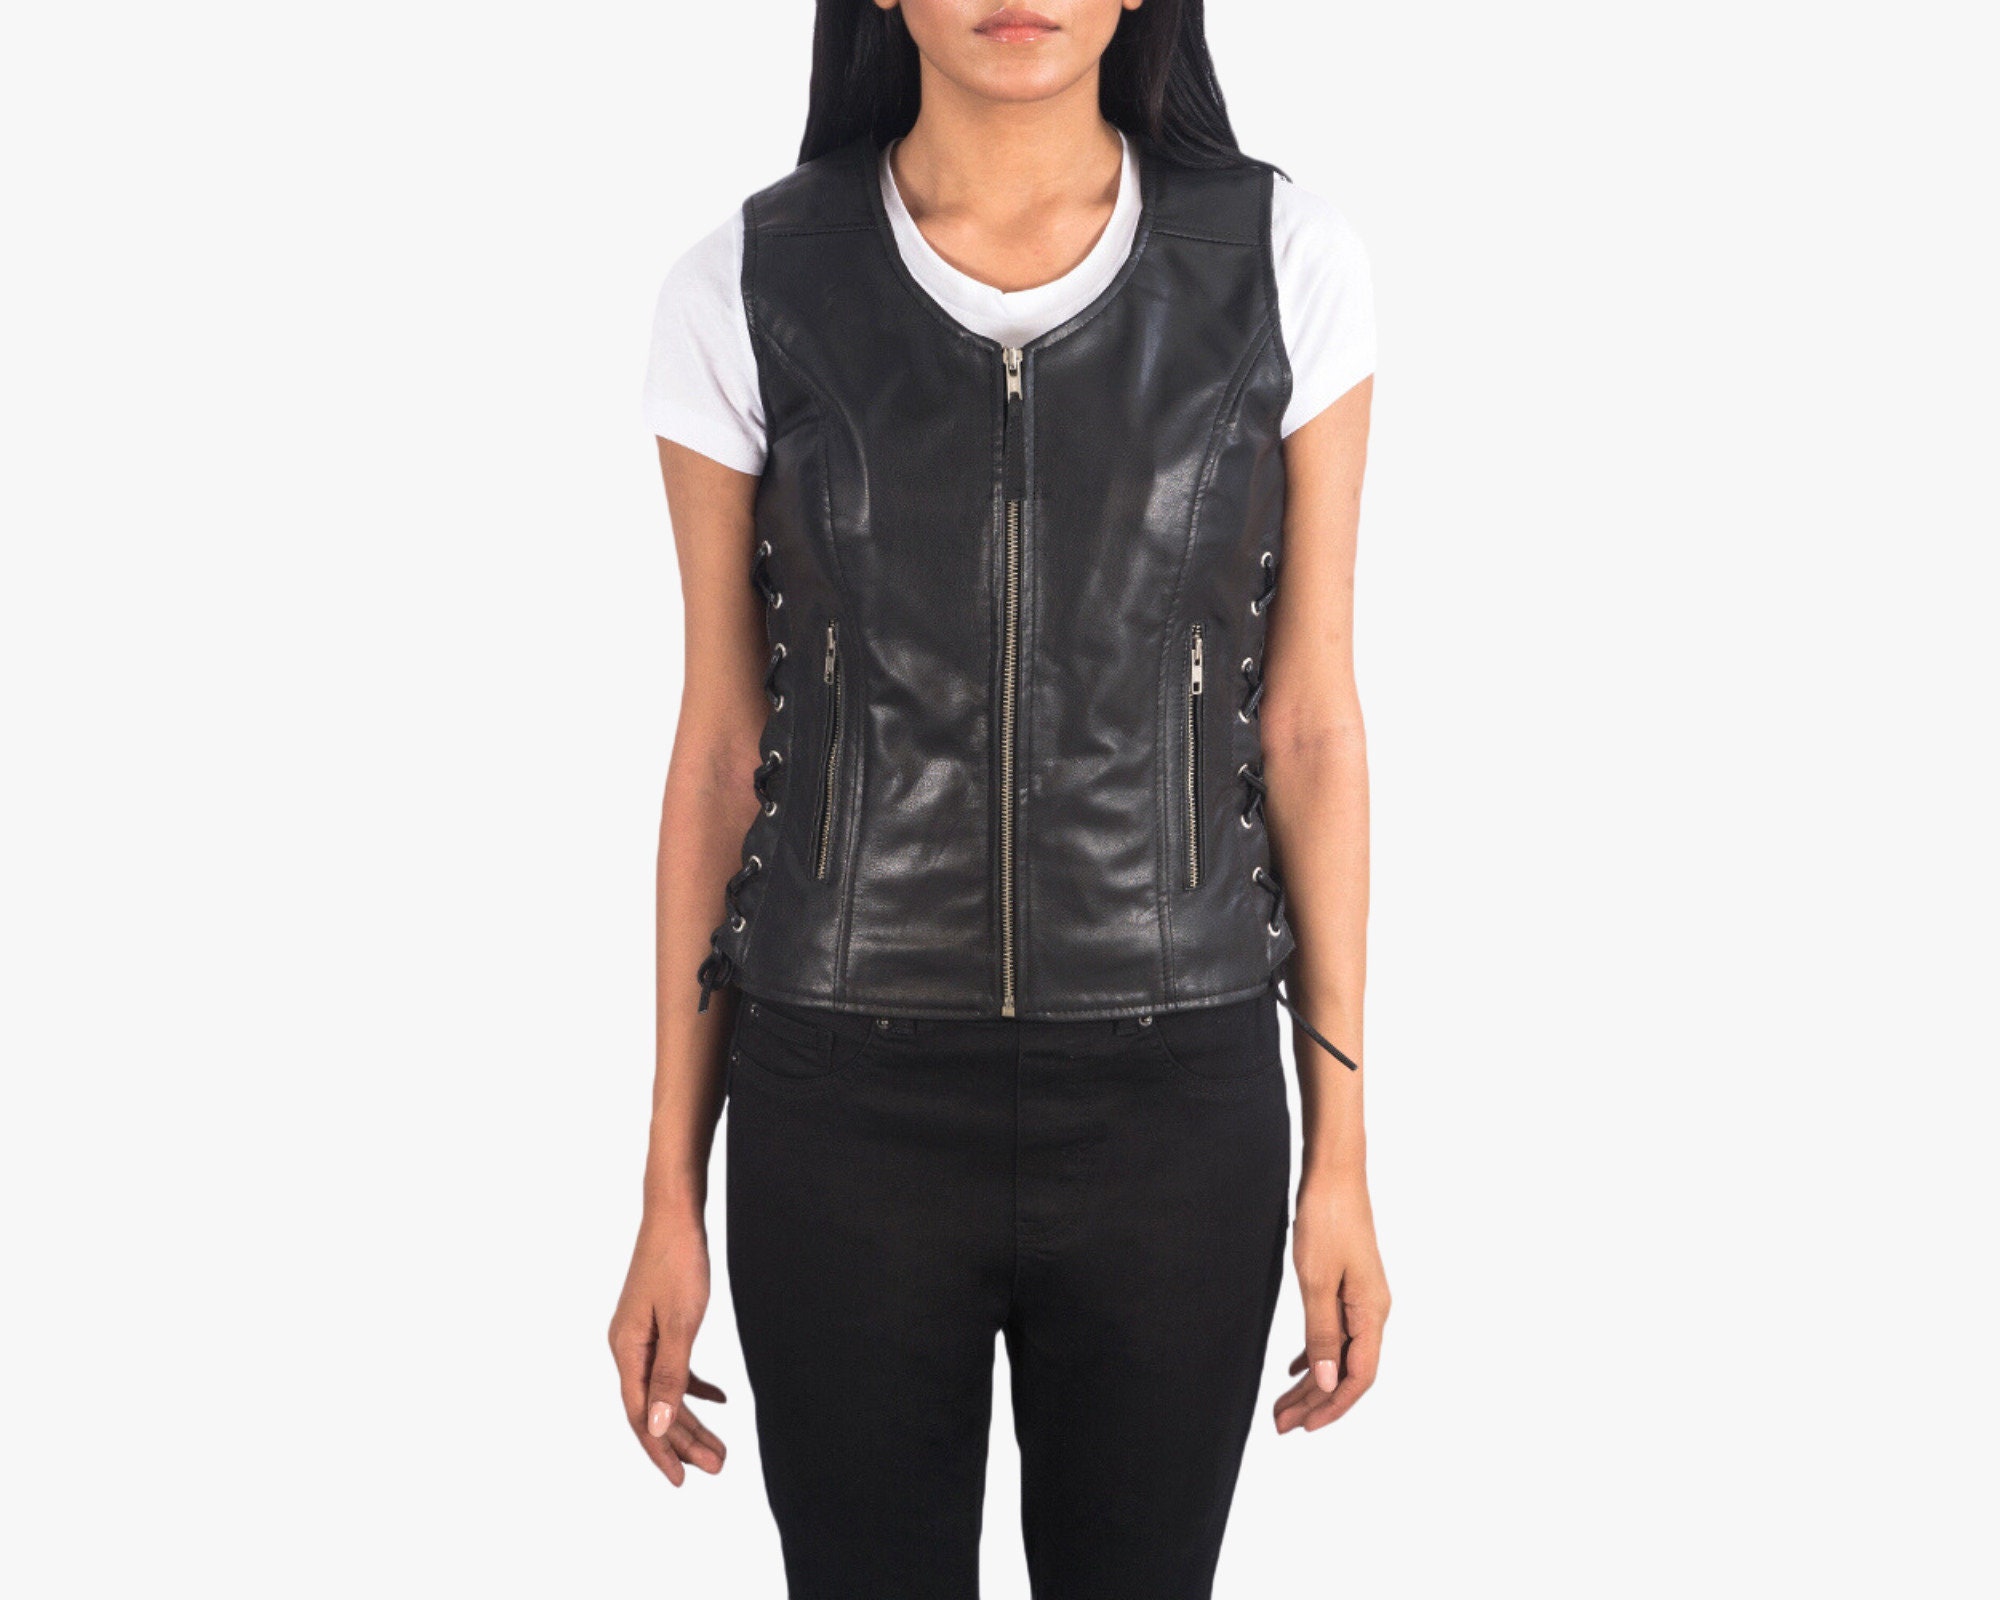 Women's Eyelet Lace Concealed Pocket Black Leather Vest